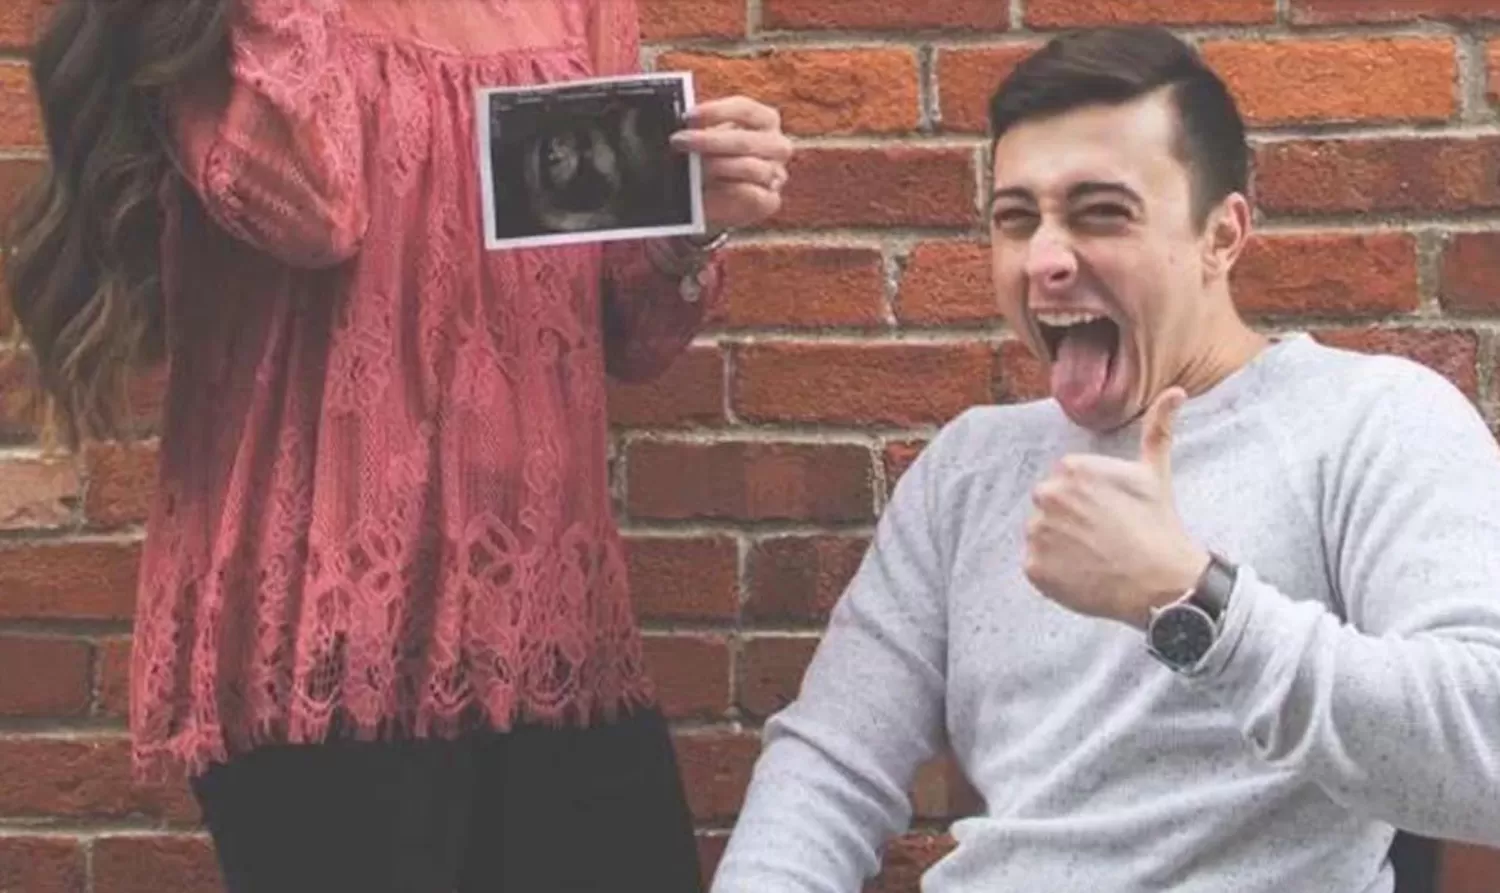 Anunció que estaba embarazada de su novio parapléjico y el mensaje se volvió viral